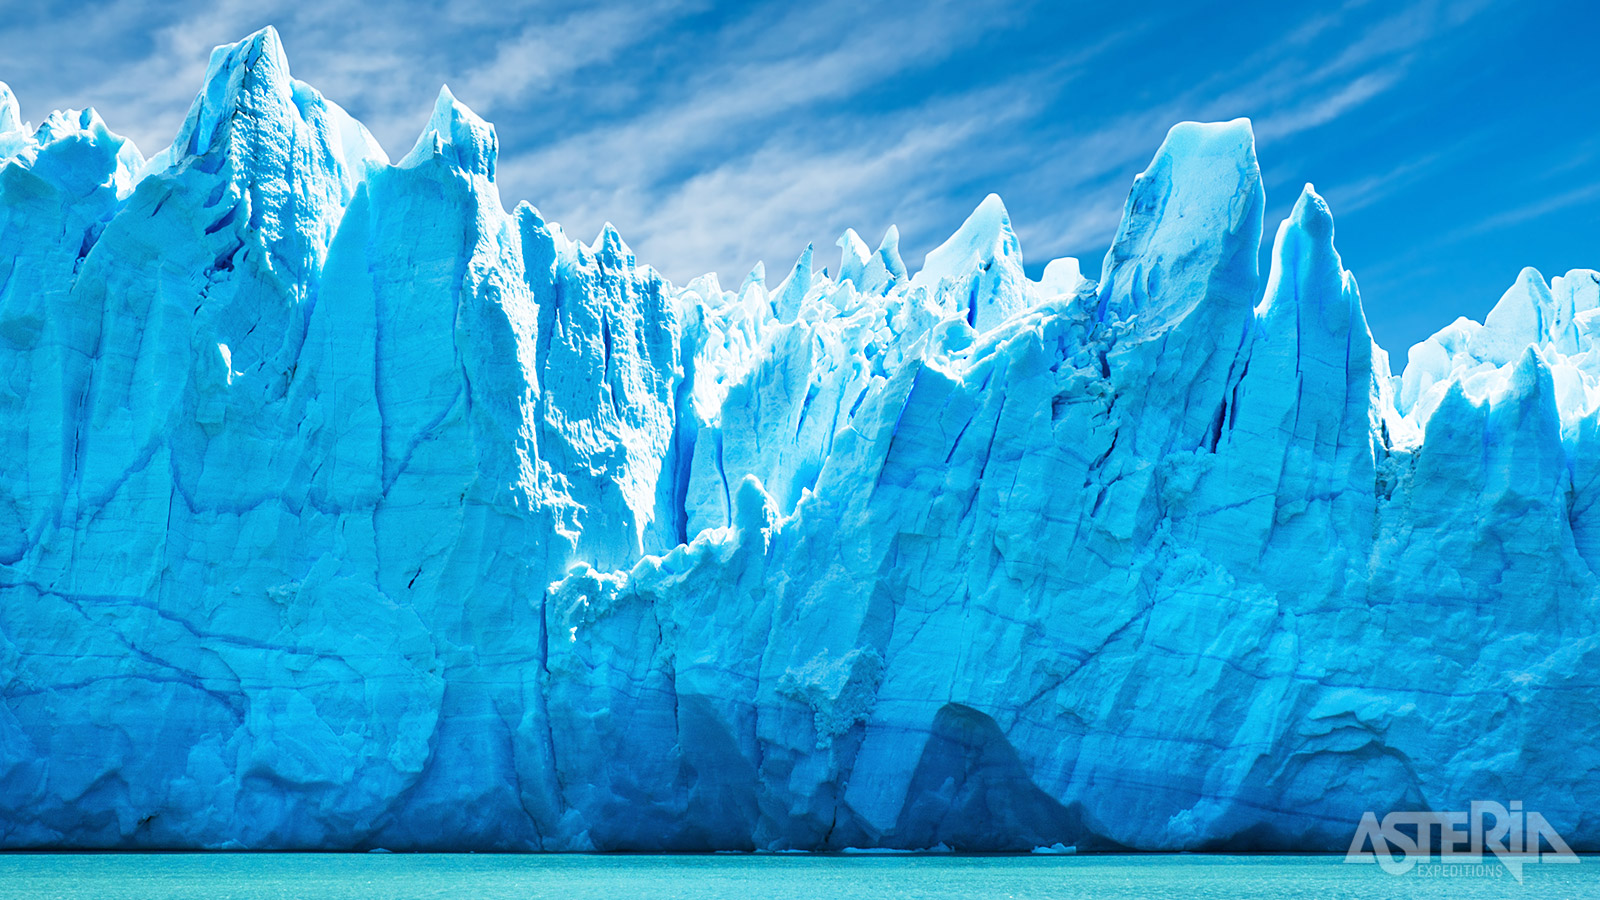 De Perito Moreno is één van de hoogtepunten in het Los Glaciares nationaal park